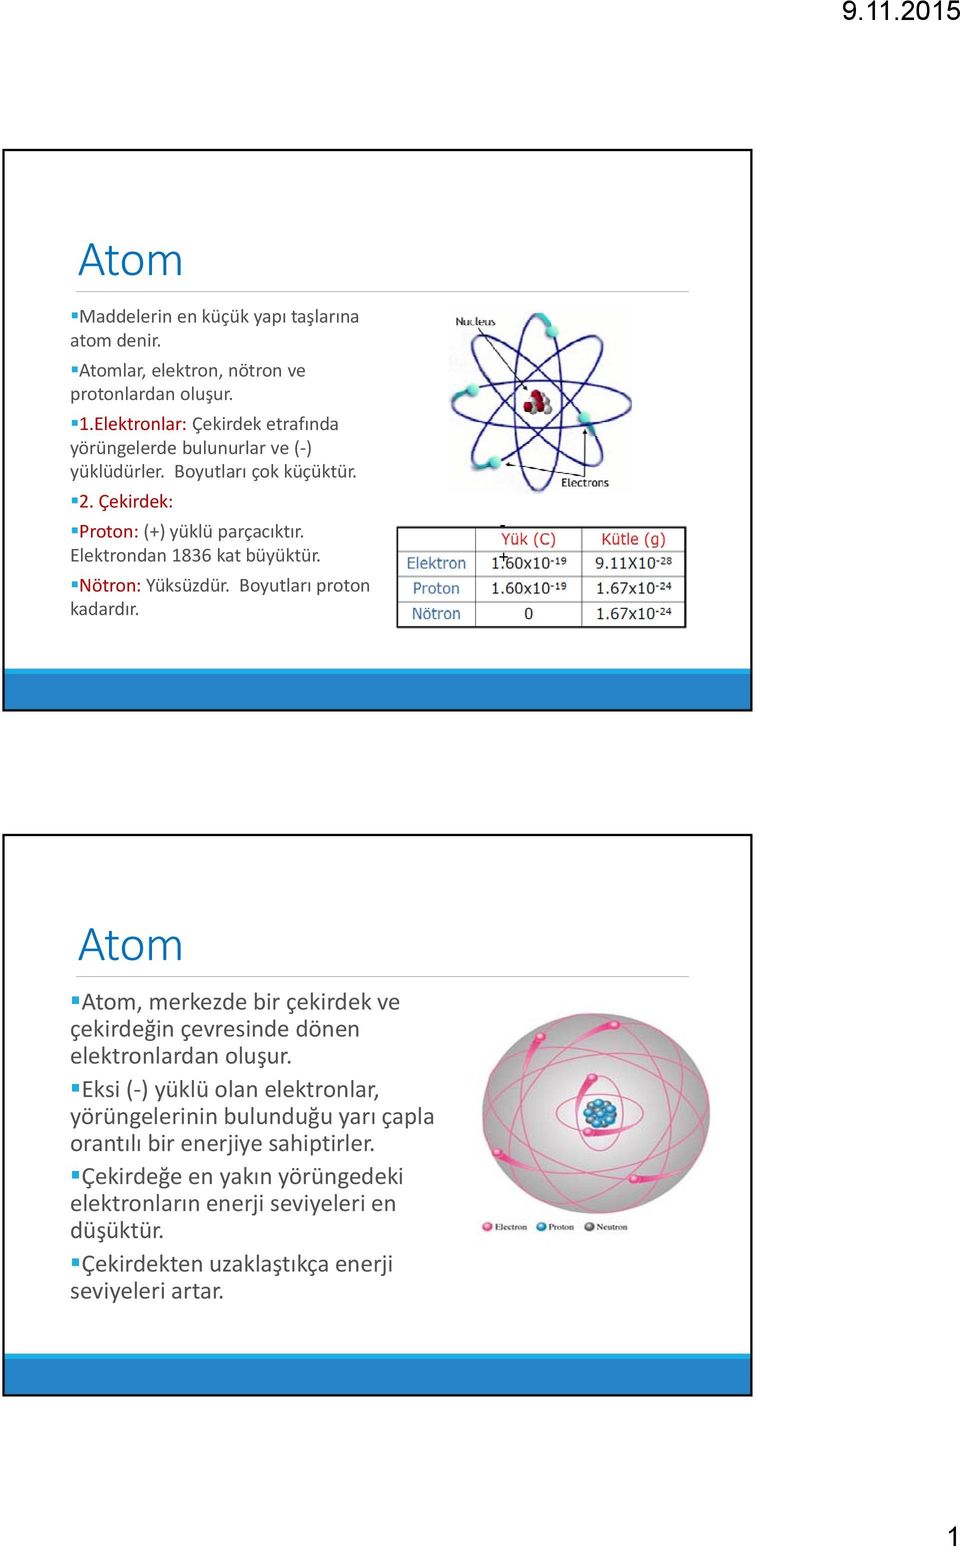 Elektrondan 1836 kat büyüktür. Nötron: Yüksüzdür. Boyutları proton kadardır.